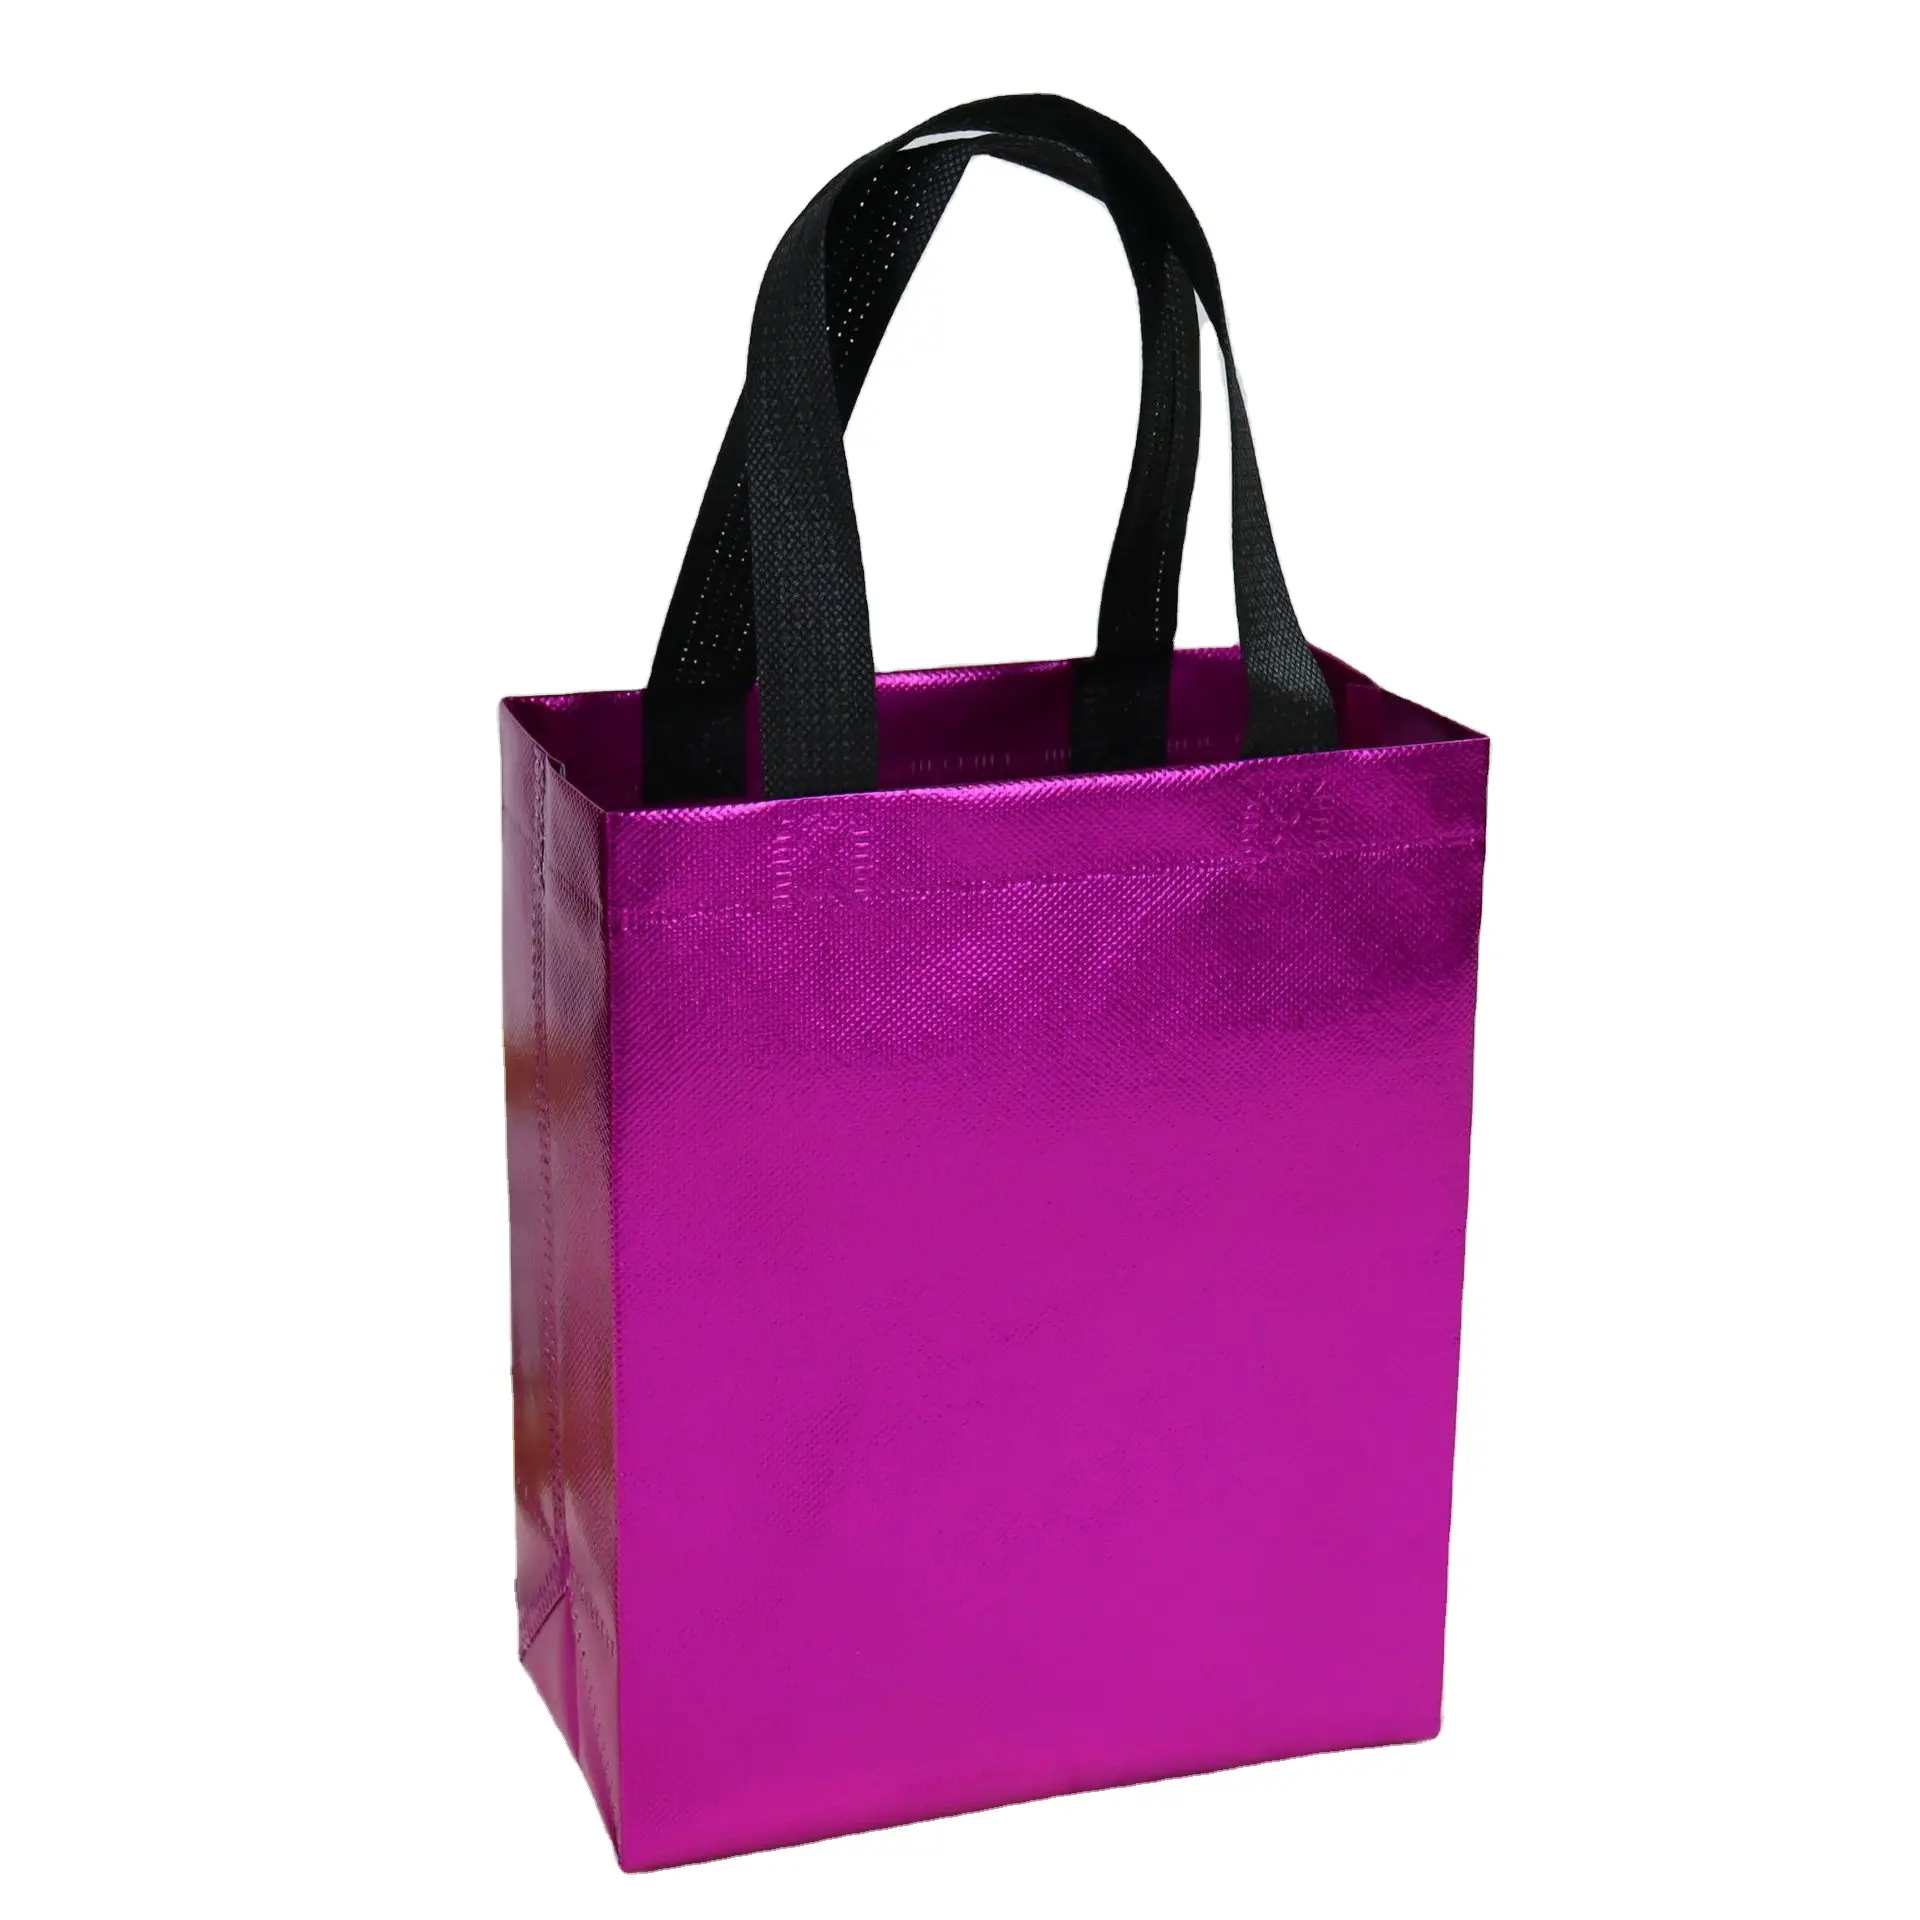 Individuelle farbe tote lebensmittel einkaufstaschen handtasche vliesstoff einzelne weinflasche tasche